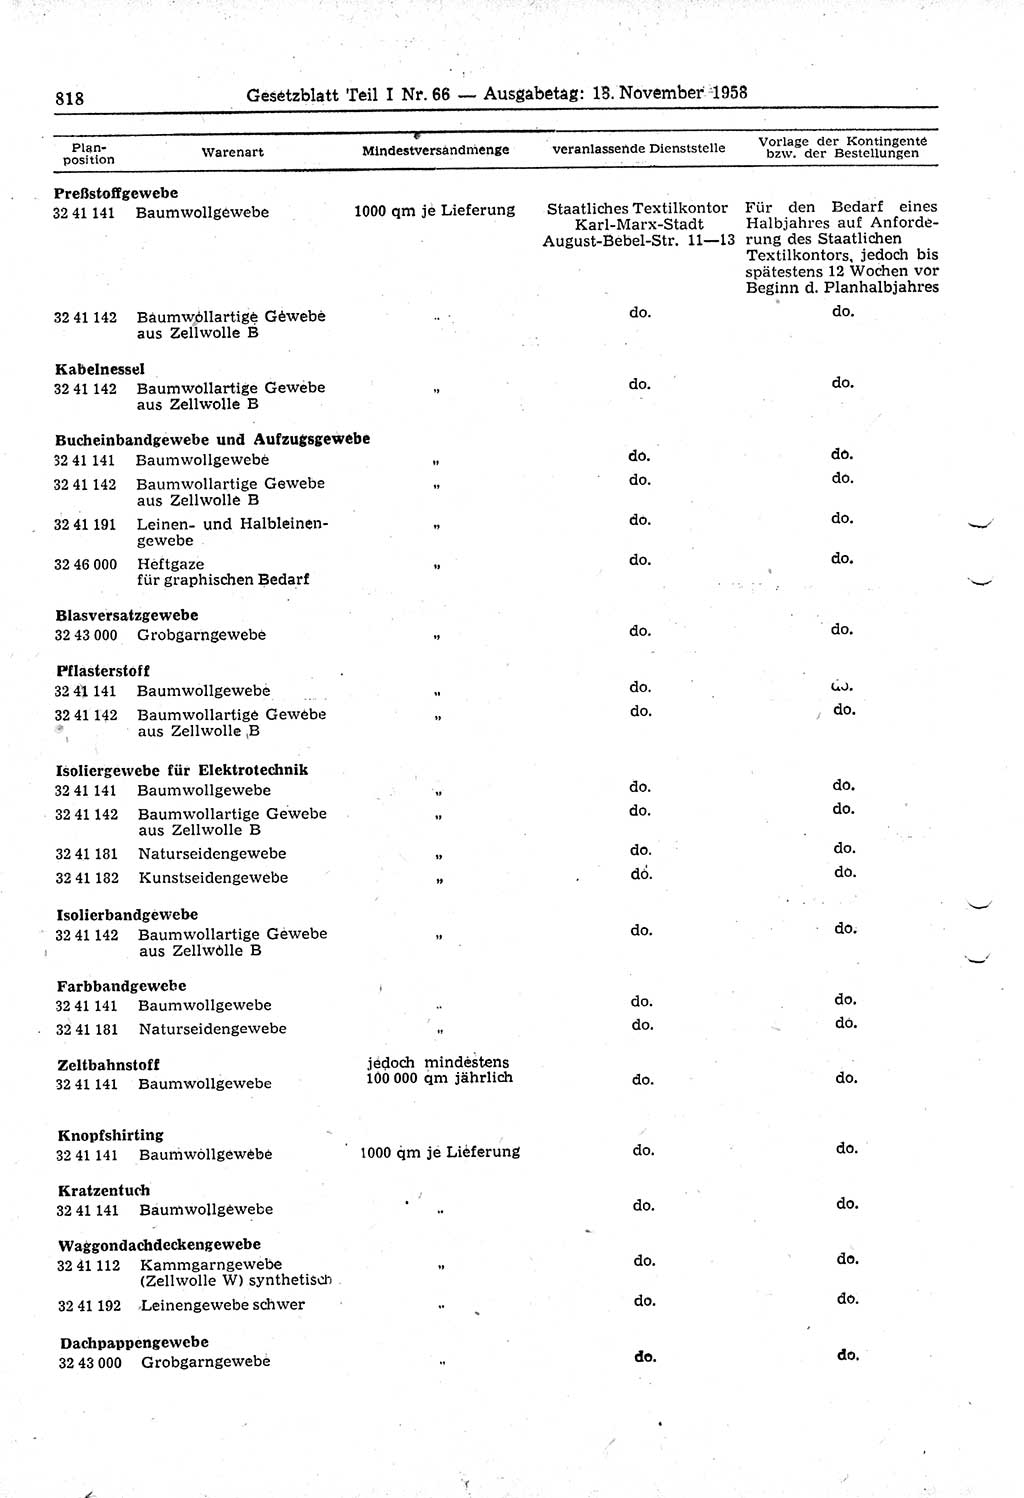 Gesetzblatt (GBl.) der Deutschen Demokratischen Republik (DDR) Teil Ⅰ 1958, Seite 818 (GBl. DDR Ⅰ 1958, S. 818)